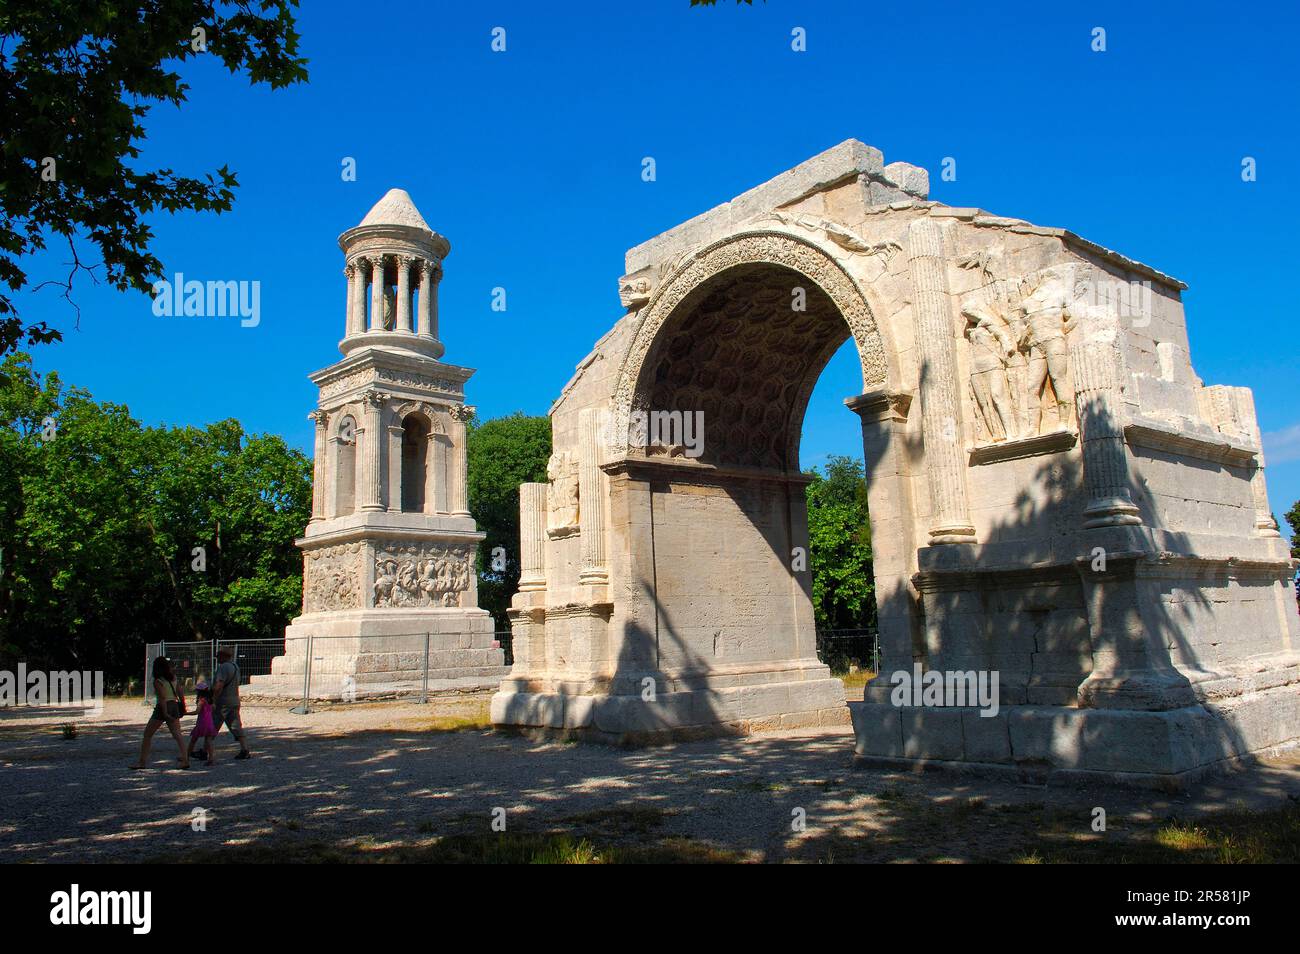 Sito di scavo di Glanum, mausoleo di Julier, antico arco trionfale, Saint-Remy-de-Provence, Bocche del Rodano, Provenza, sud della Francia, mausoleo romano Foto Stock